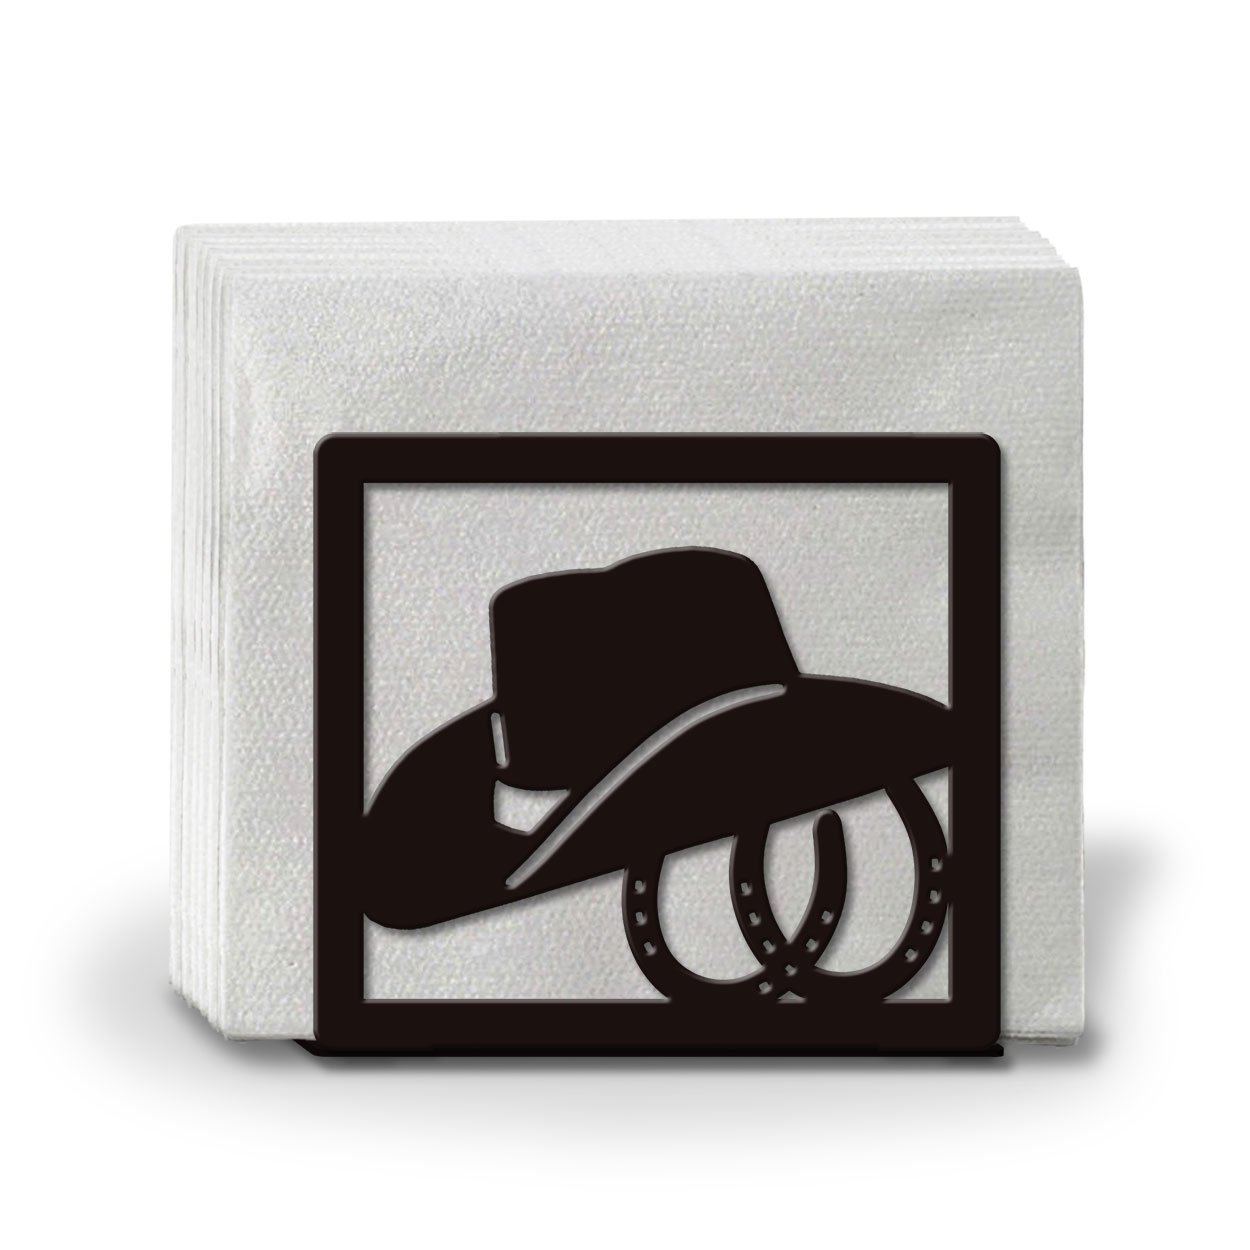 621103 - Hat and Boots Metal Napkin or Letter Holder - Choose Color